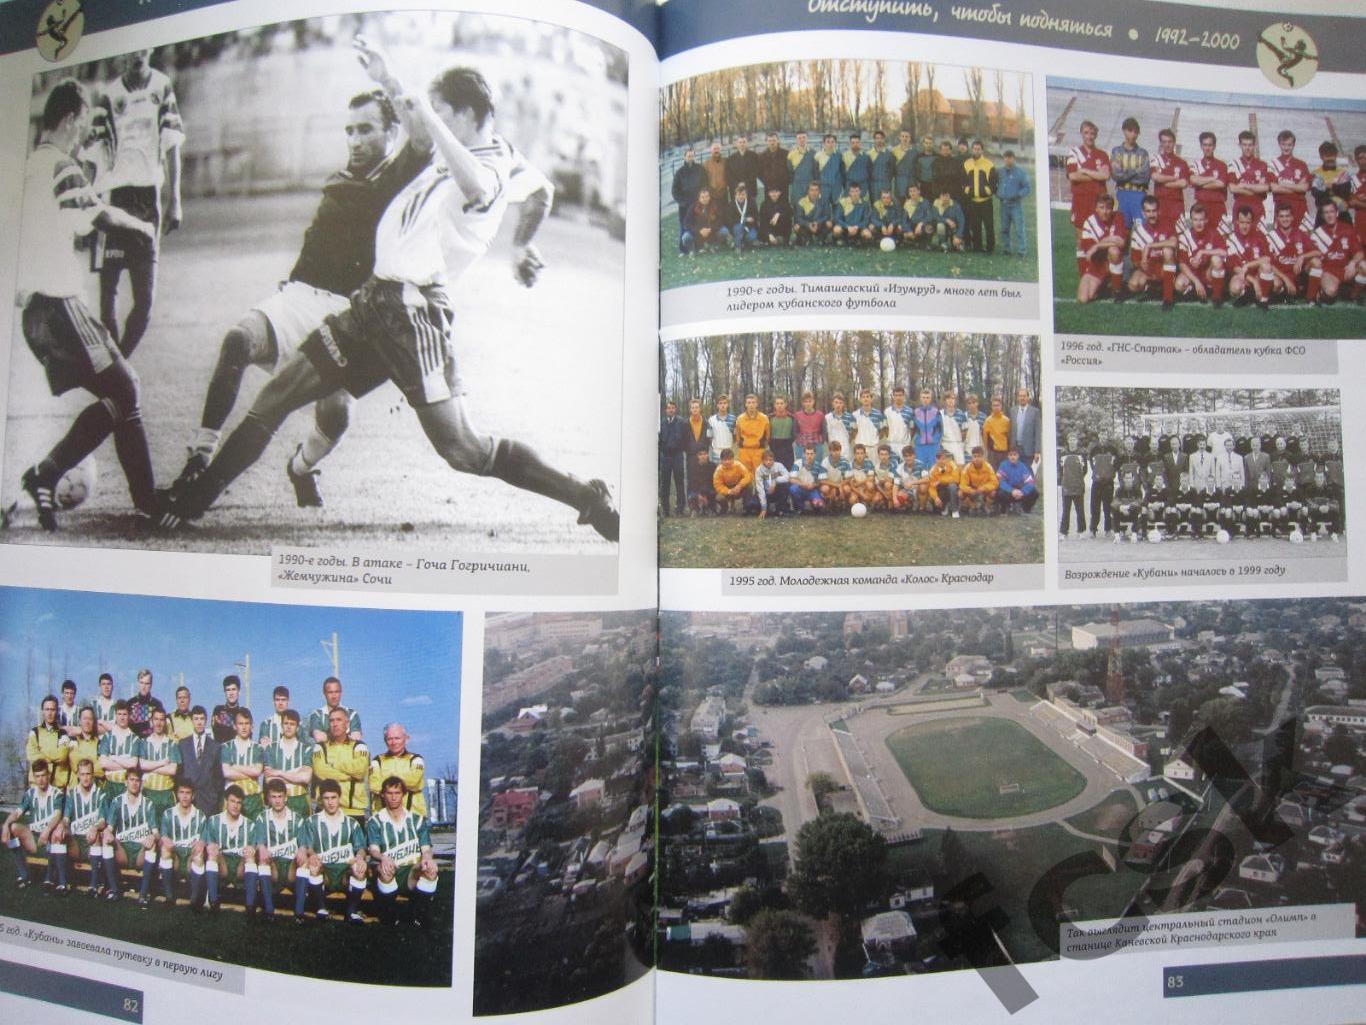 Футбольный матч длиной в столетие. Из истории кубанского футбола 1912-2012 2